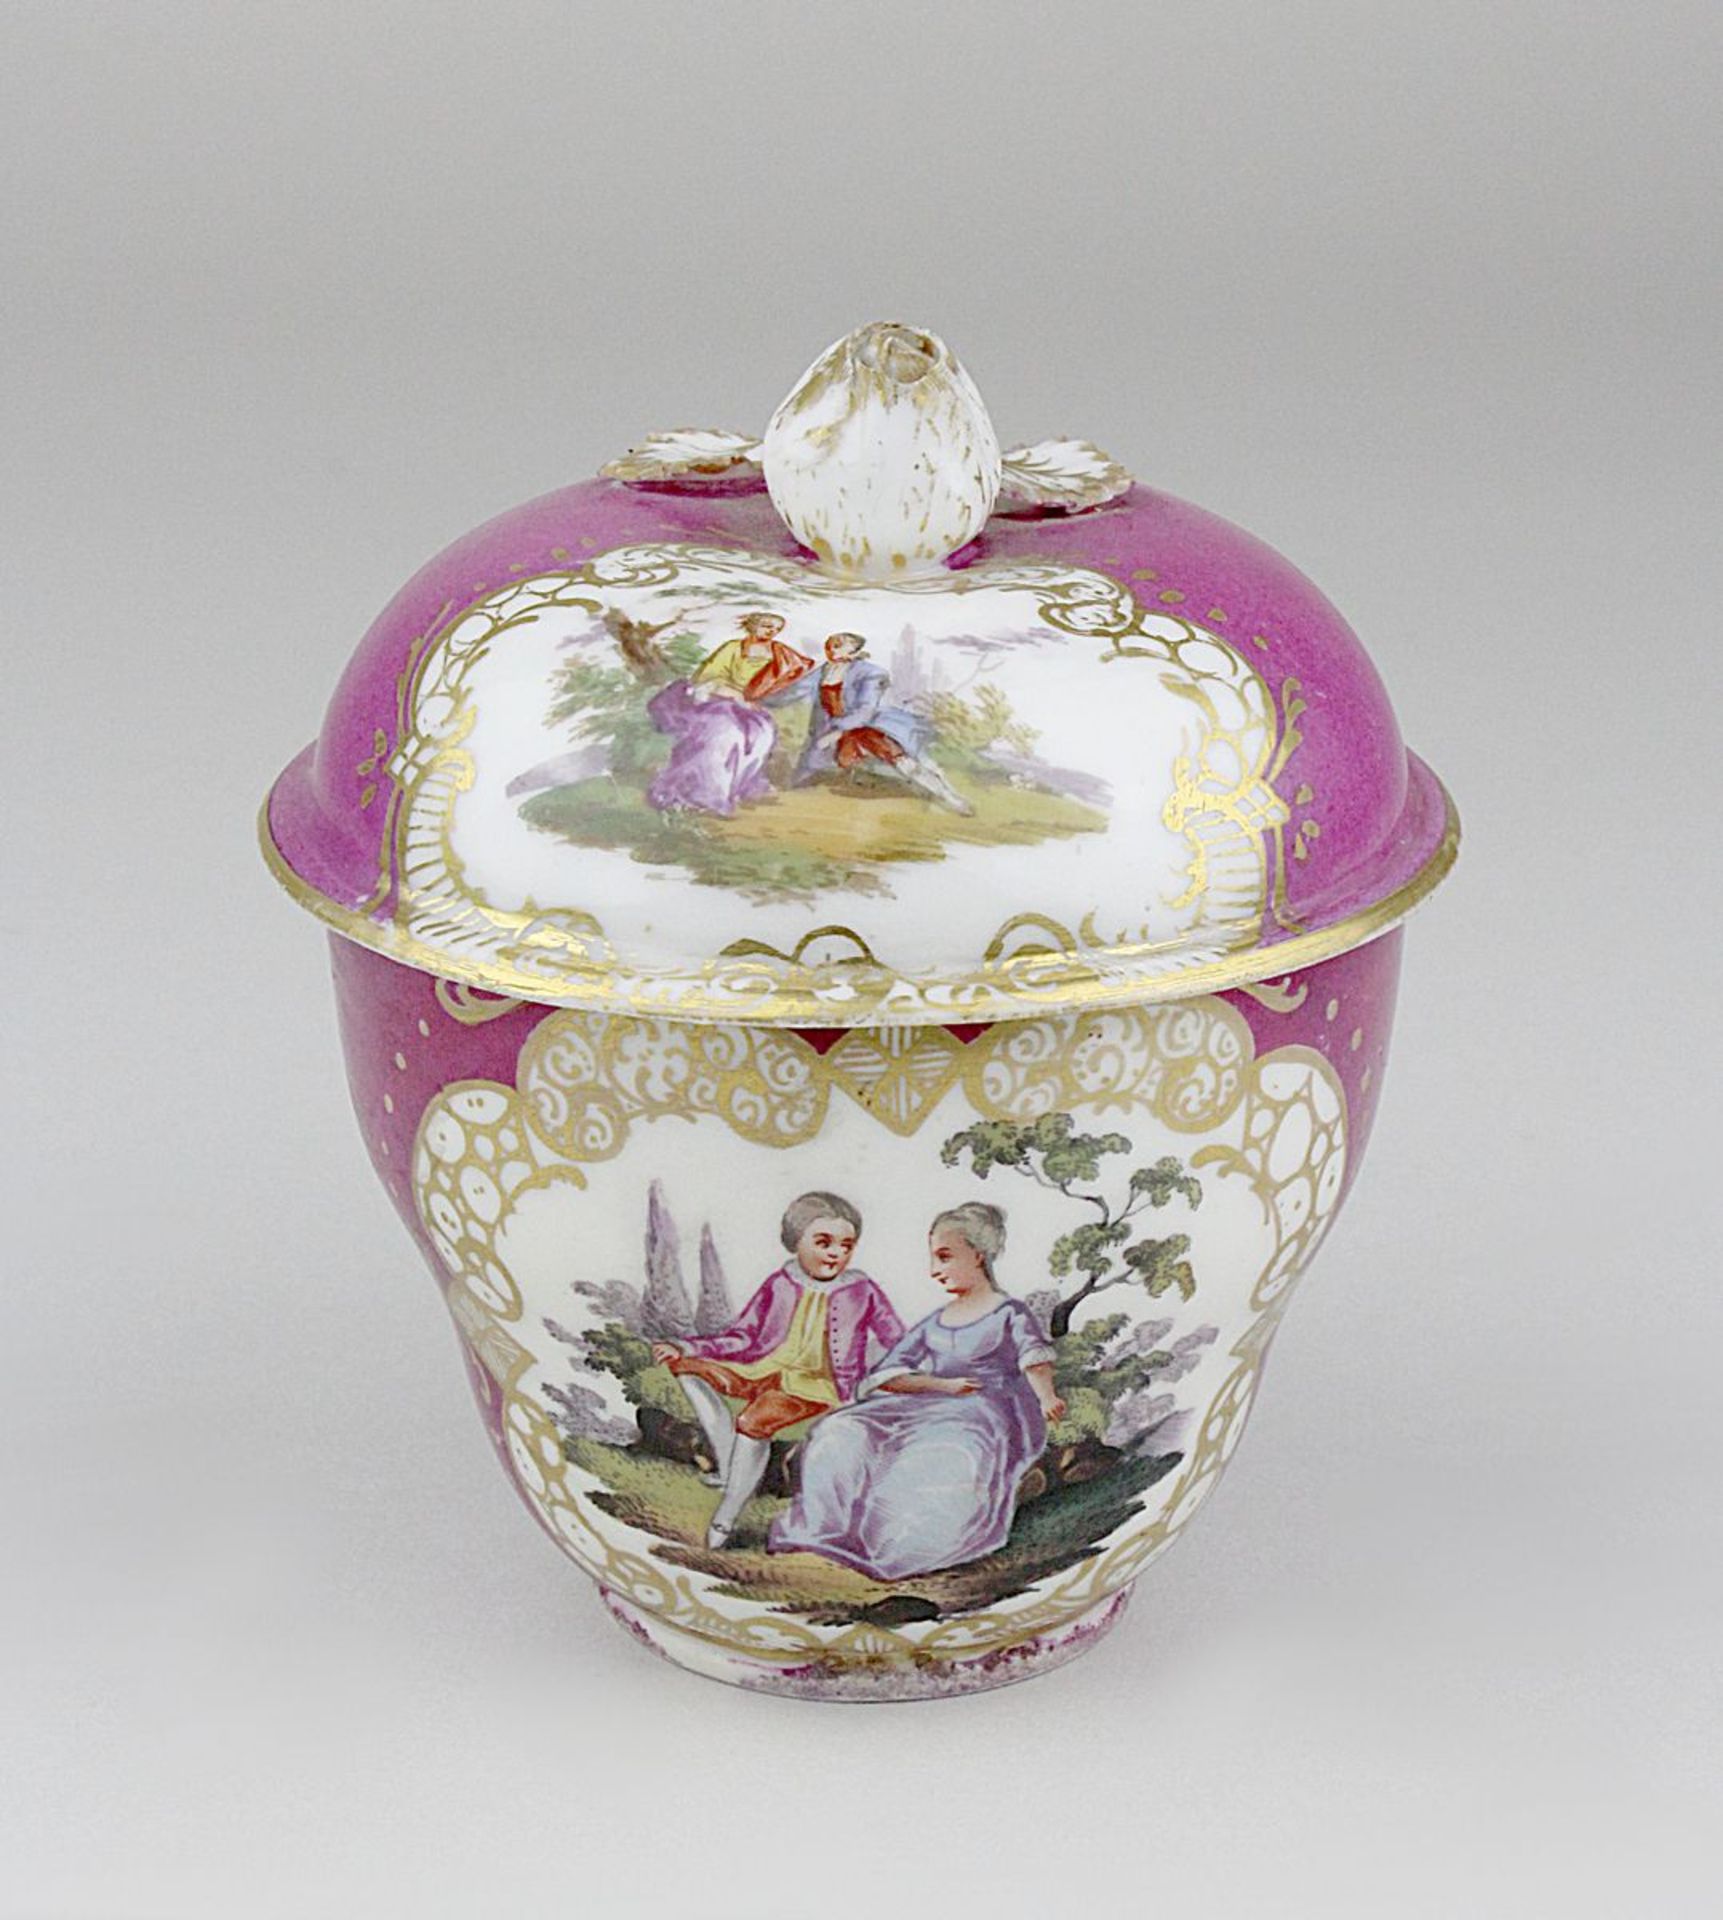 Meissen, Cremedose, 1774-1814, Porzellan, weißer Scherben, Aufglasurmalerei, Goldkartuschen mit